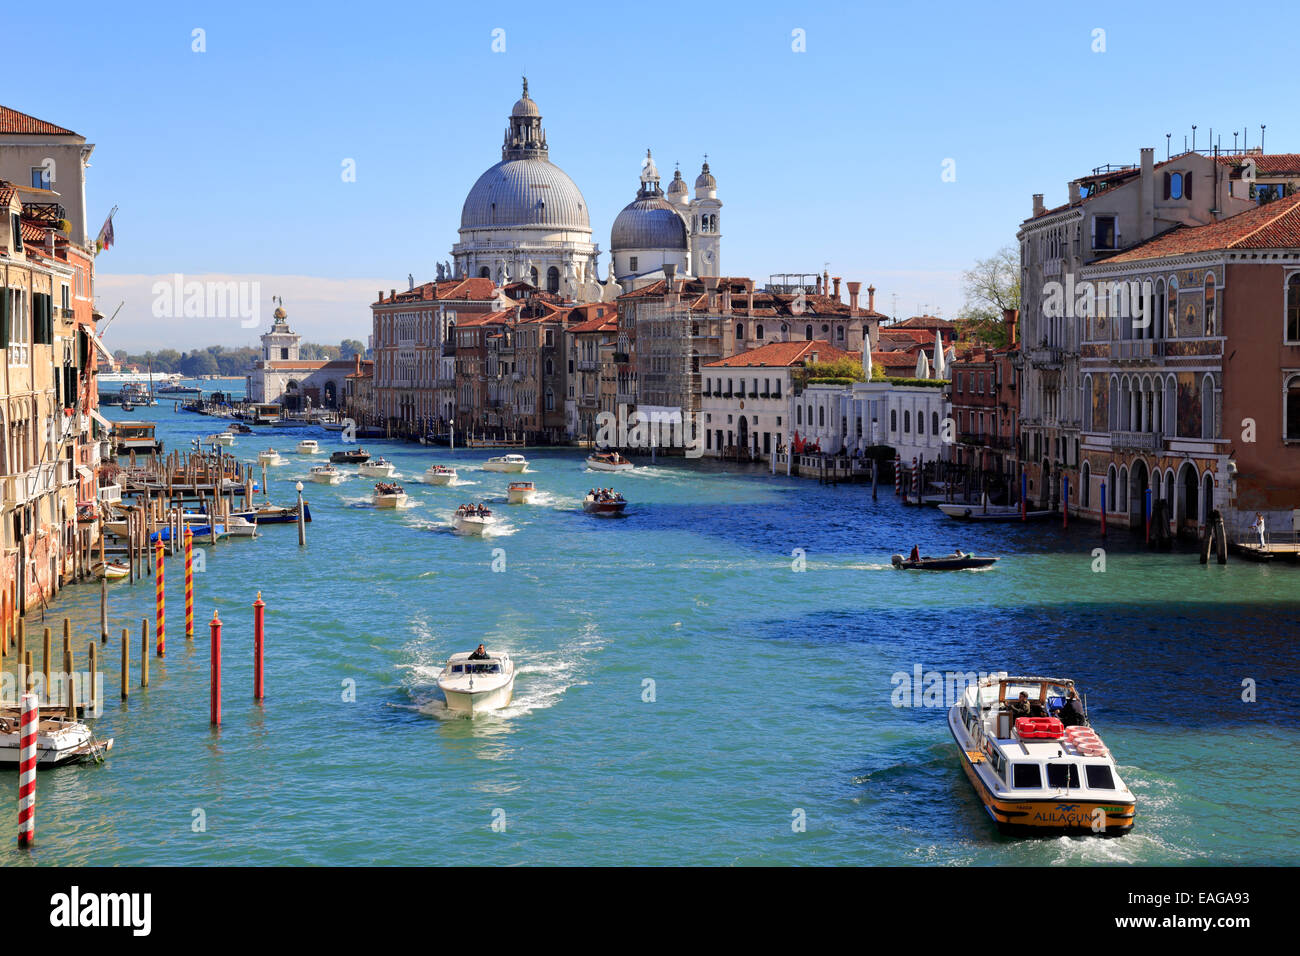 Bateaux-taxis sur le Grand Canal avec Santa Maria della Salute sur Dorsoduro depuis le pont de l'Accademia, Venise, Italie. Banque D'Images